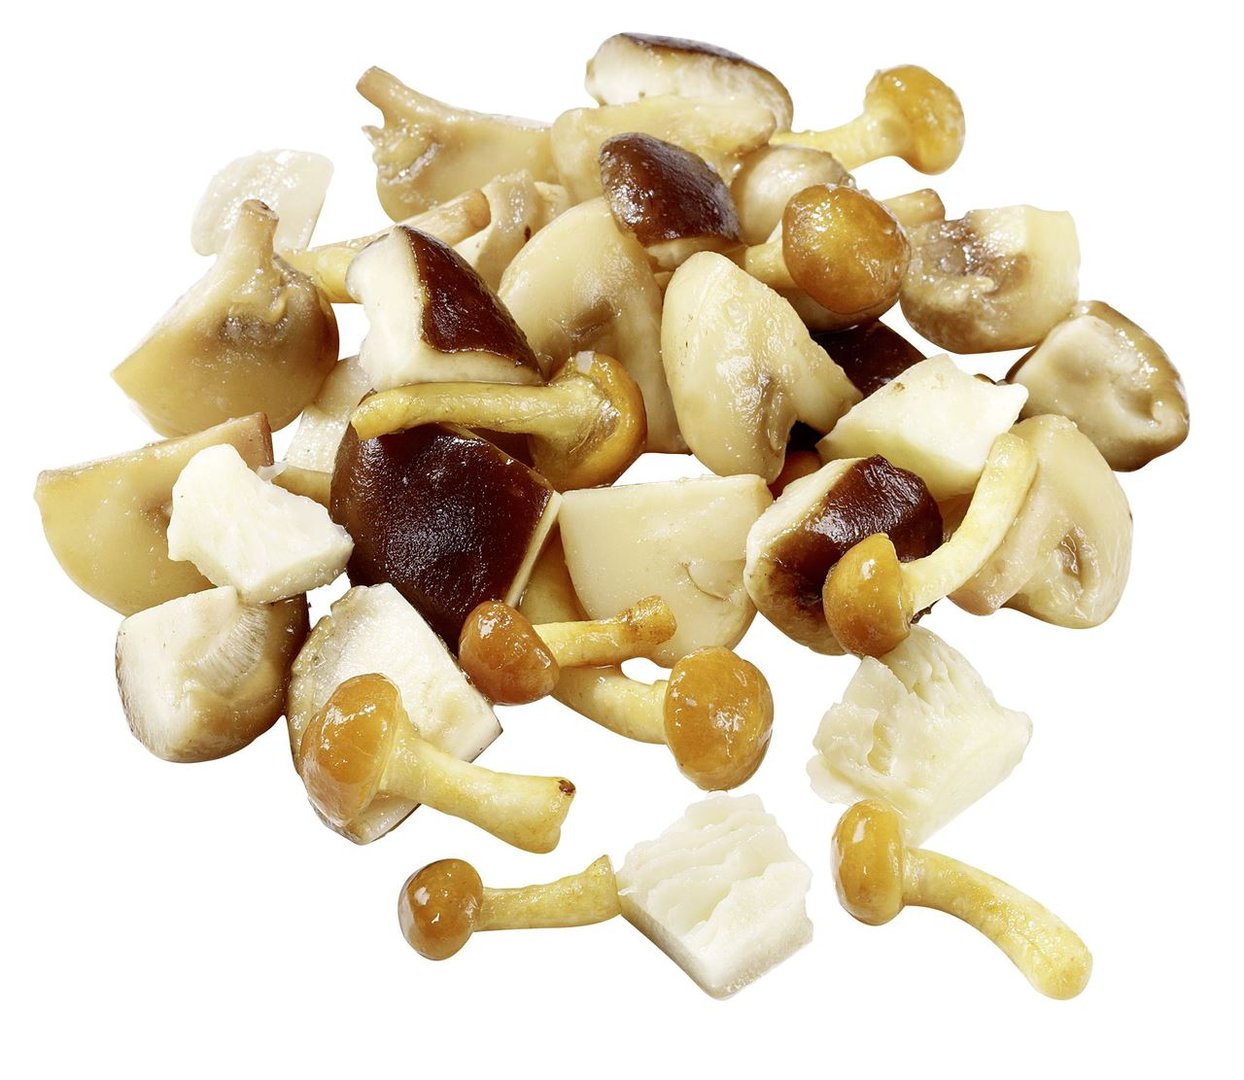 Golden Mushroom - Klassische Waldpilzmischung tiefgefroren - 1 kg Beutel